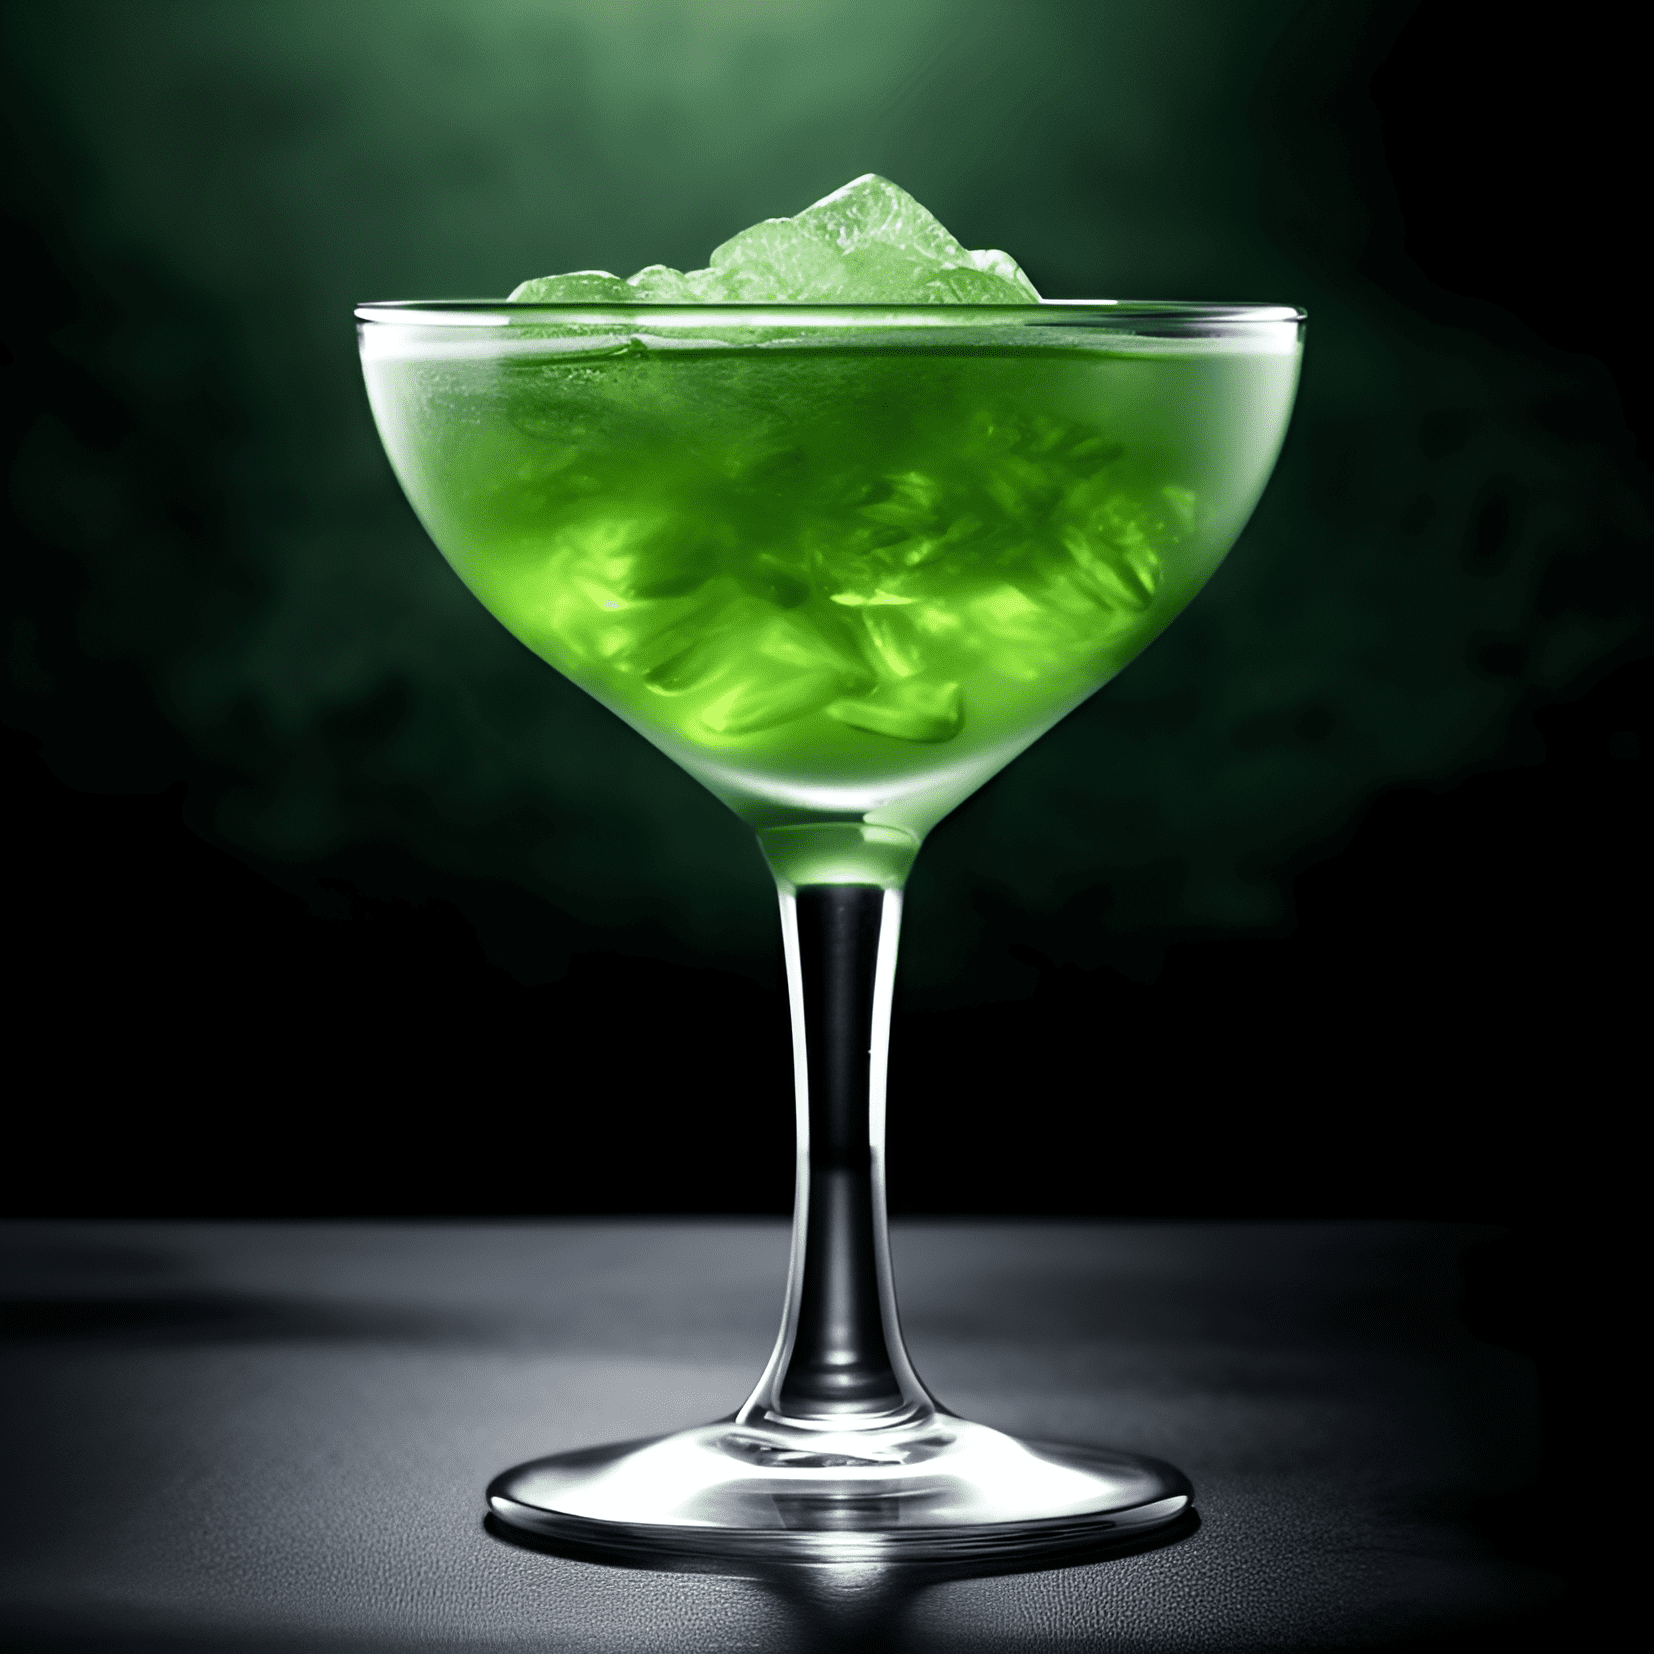 Green Ghost Cóctel Receta - El cóctel Green Ghost es una bebida compleja y refrescante con una mezcla de sabores herbales, cítricos y ligeramente dulces. La ginebra proporciona una base fuerte y con sabor a enebro, mientras que el Chartreuse verde agrega una calidad única de hierbas y ligeramente dulce. El jugo de lima aporta una nota cítrica fresca y ácida que equilibra la dulzura y agrega un final con sabor a limón.